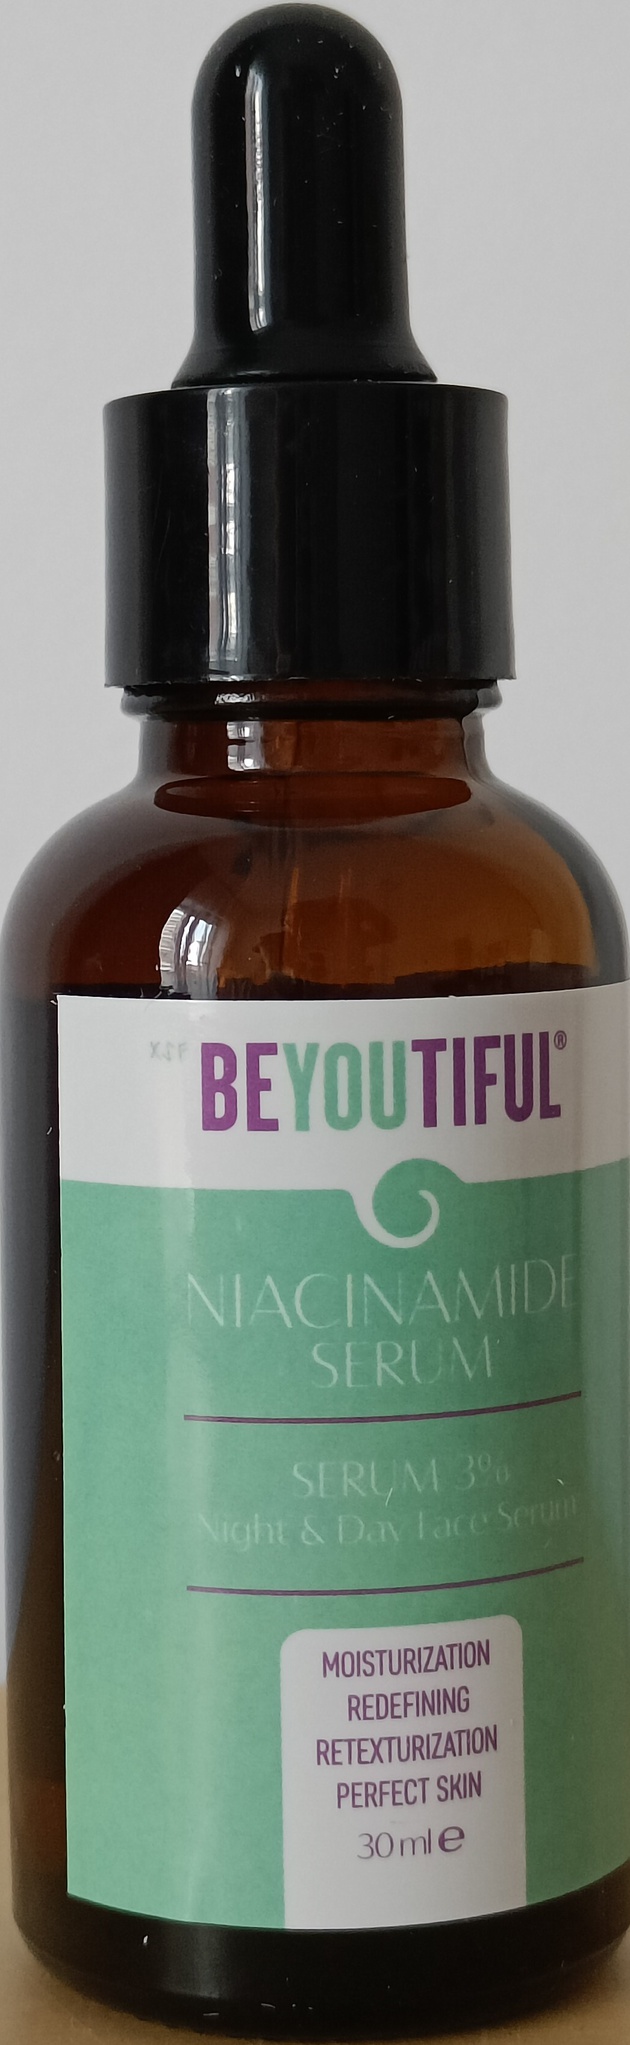 Beyoutiful Niacinamide Serum 3% Night & Day Face Serum